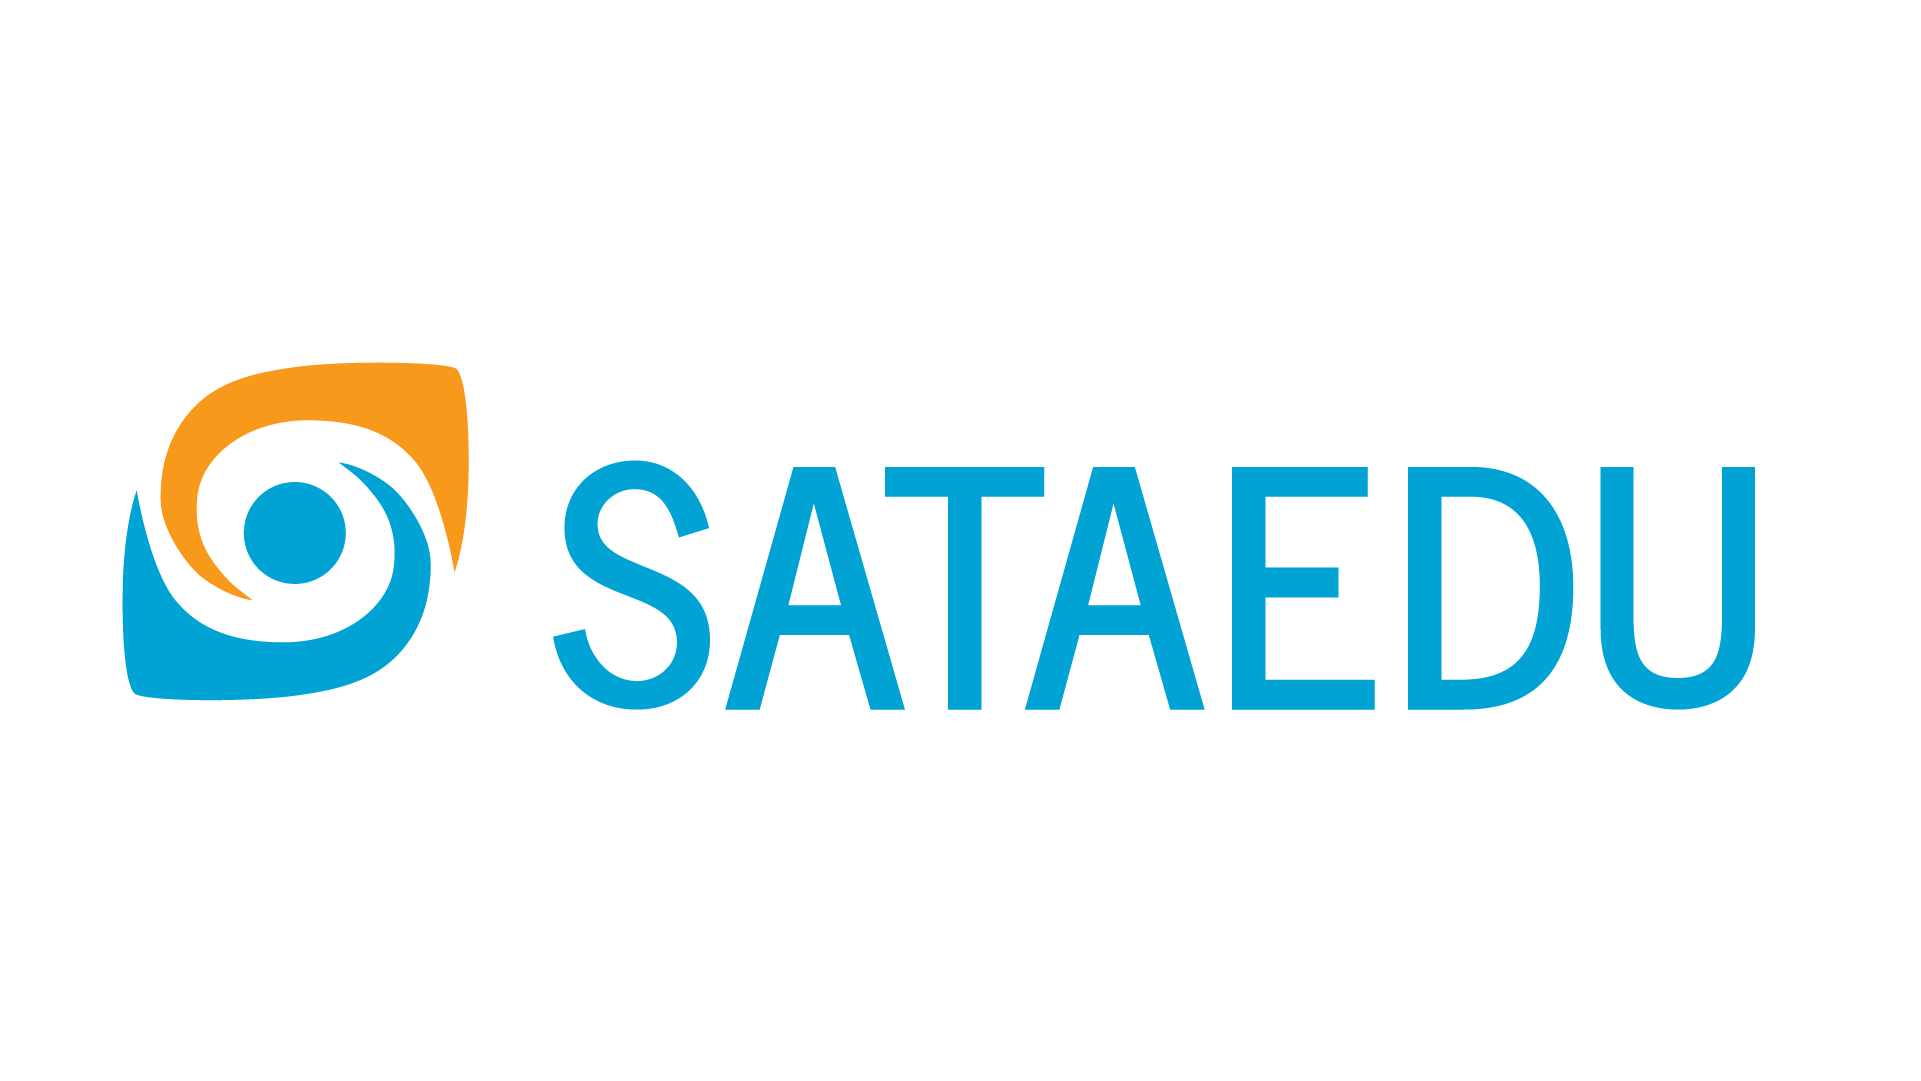 Sataedun logo